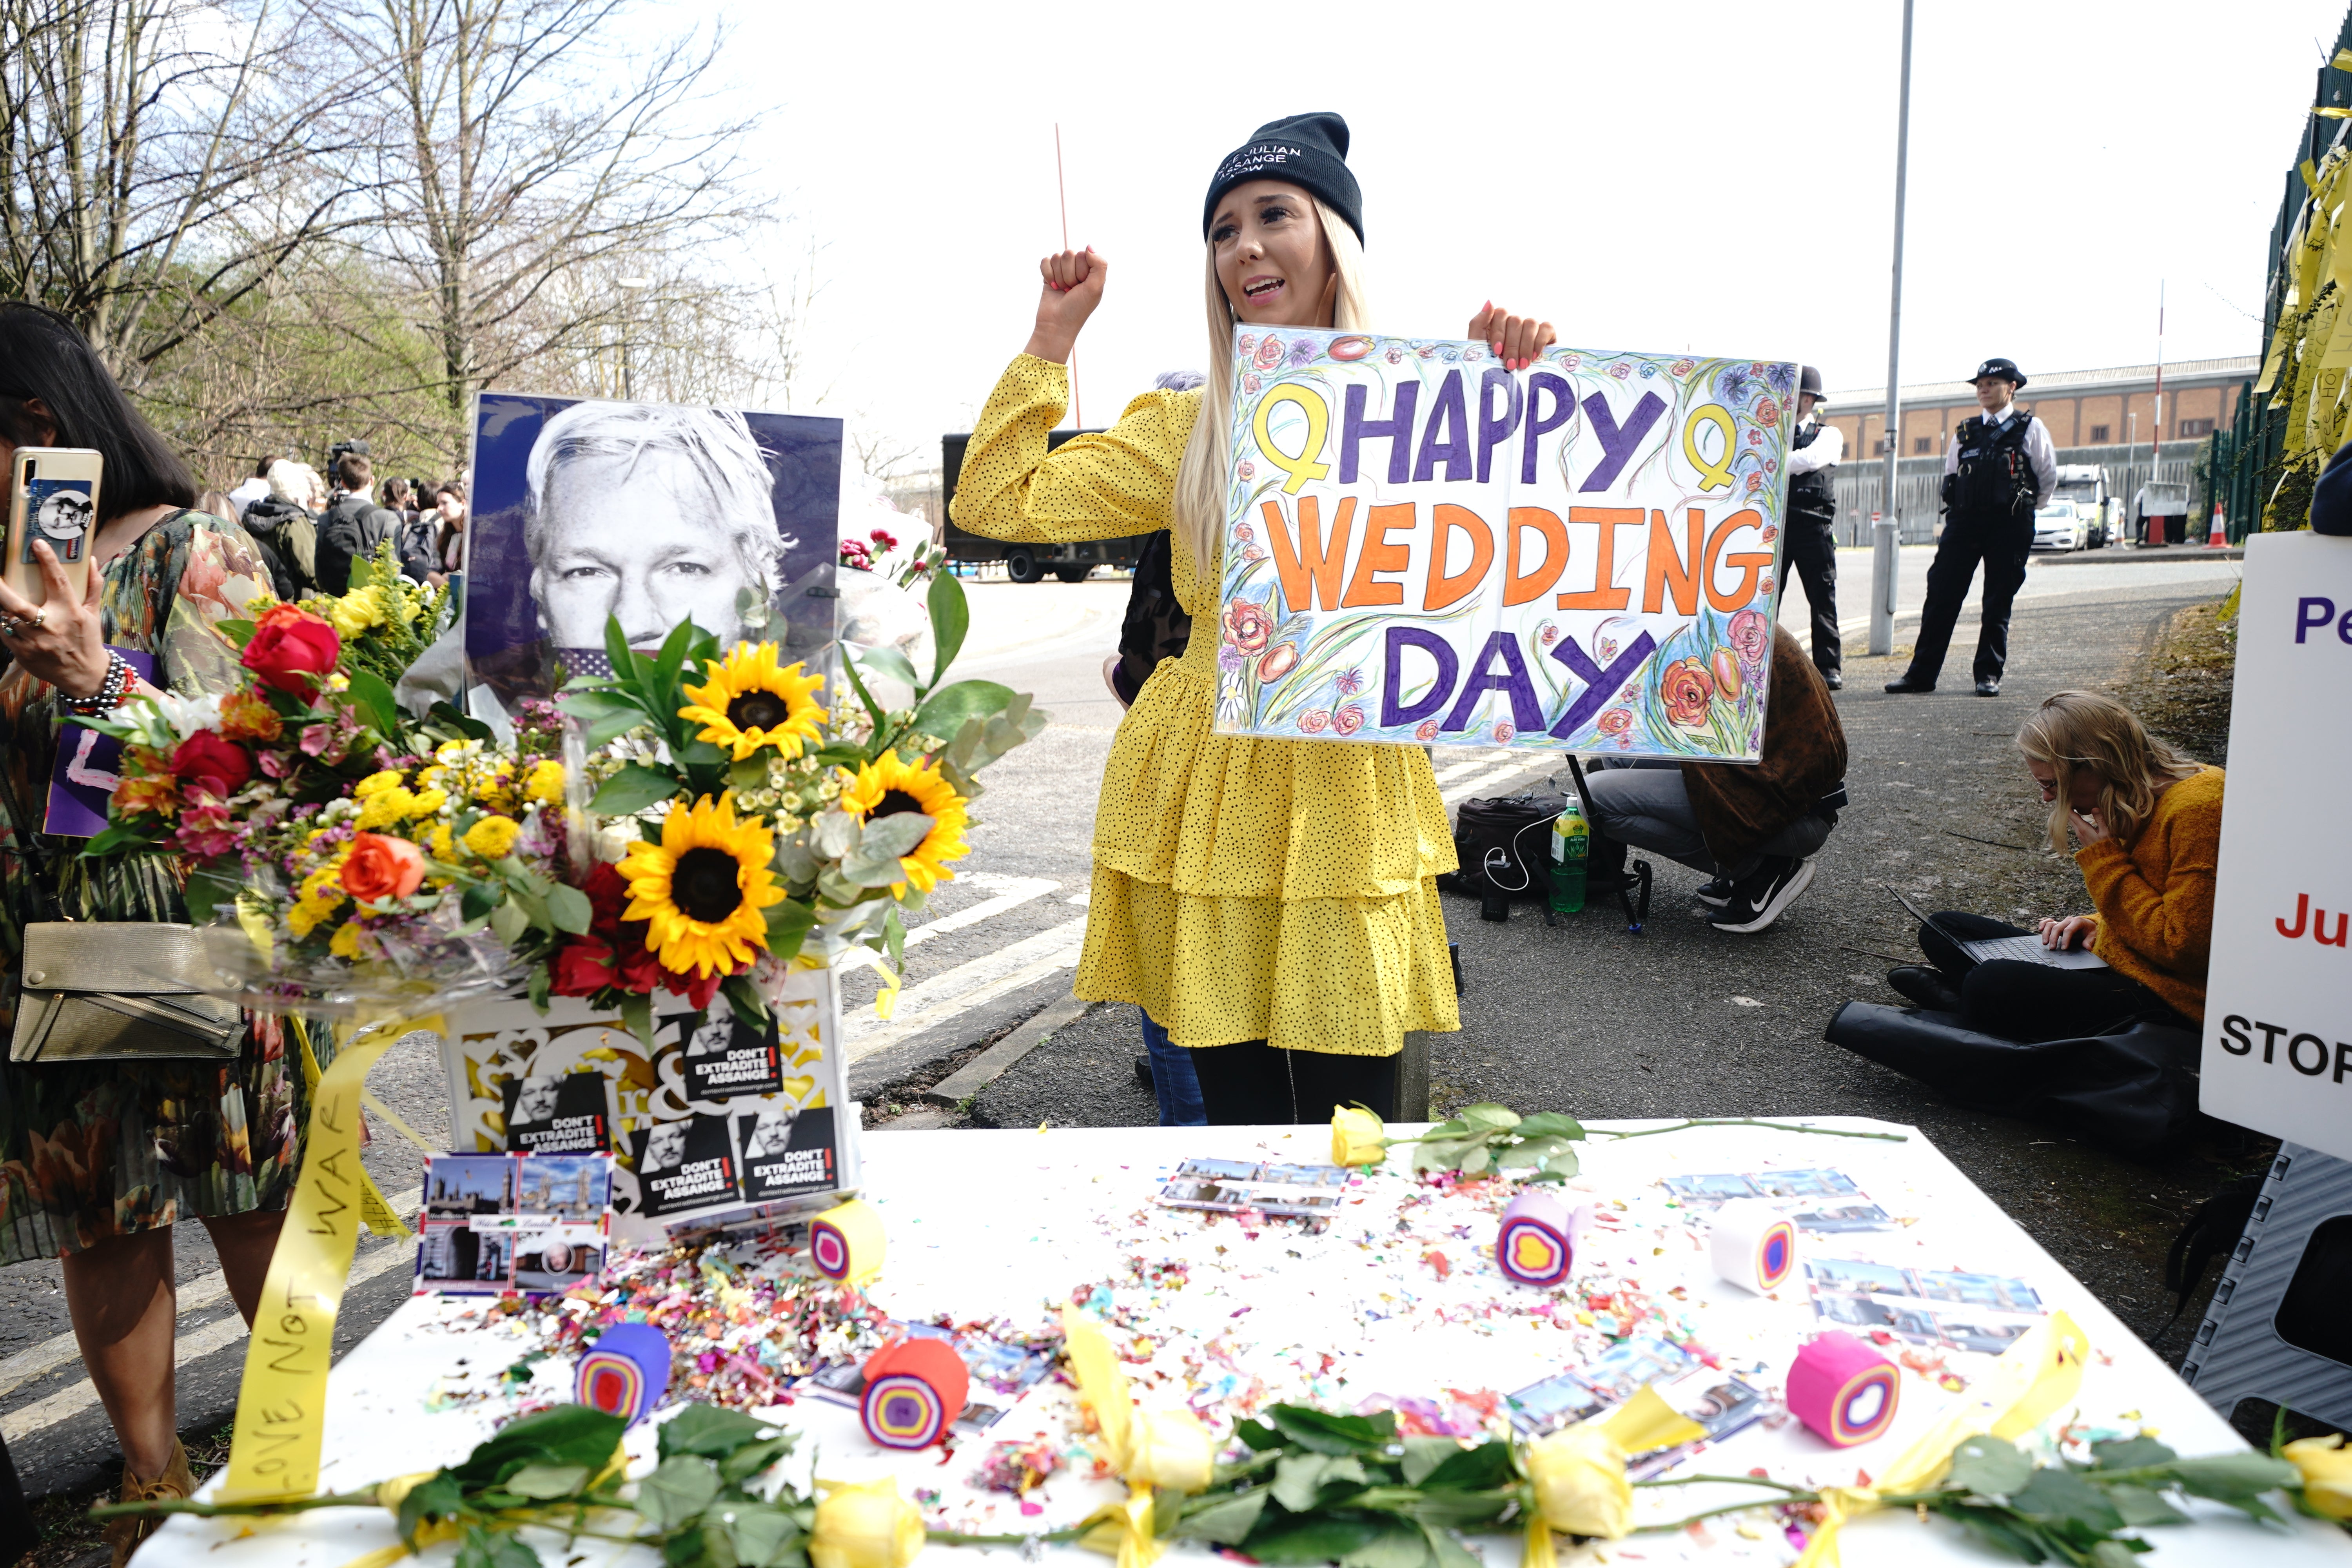 Wellwishers celebrate the wedding outside (Yui Mok/PA)